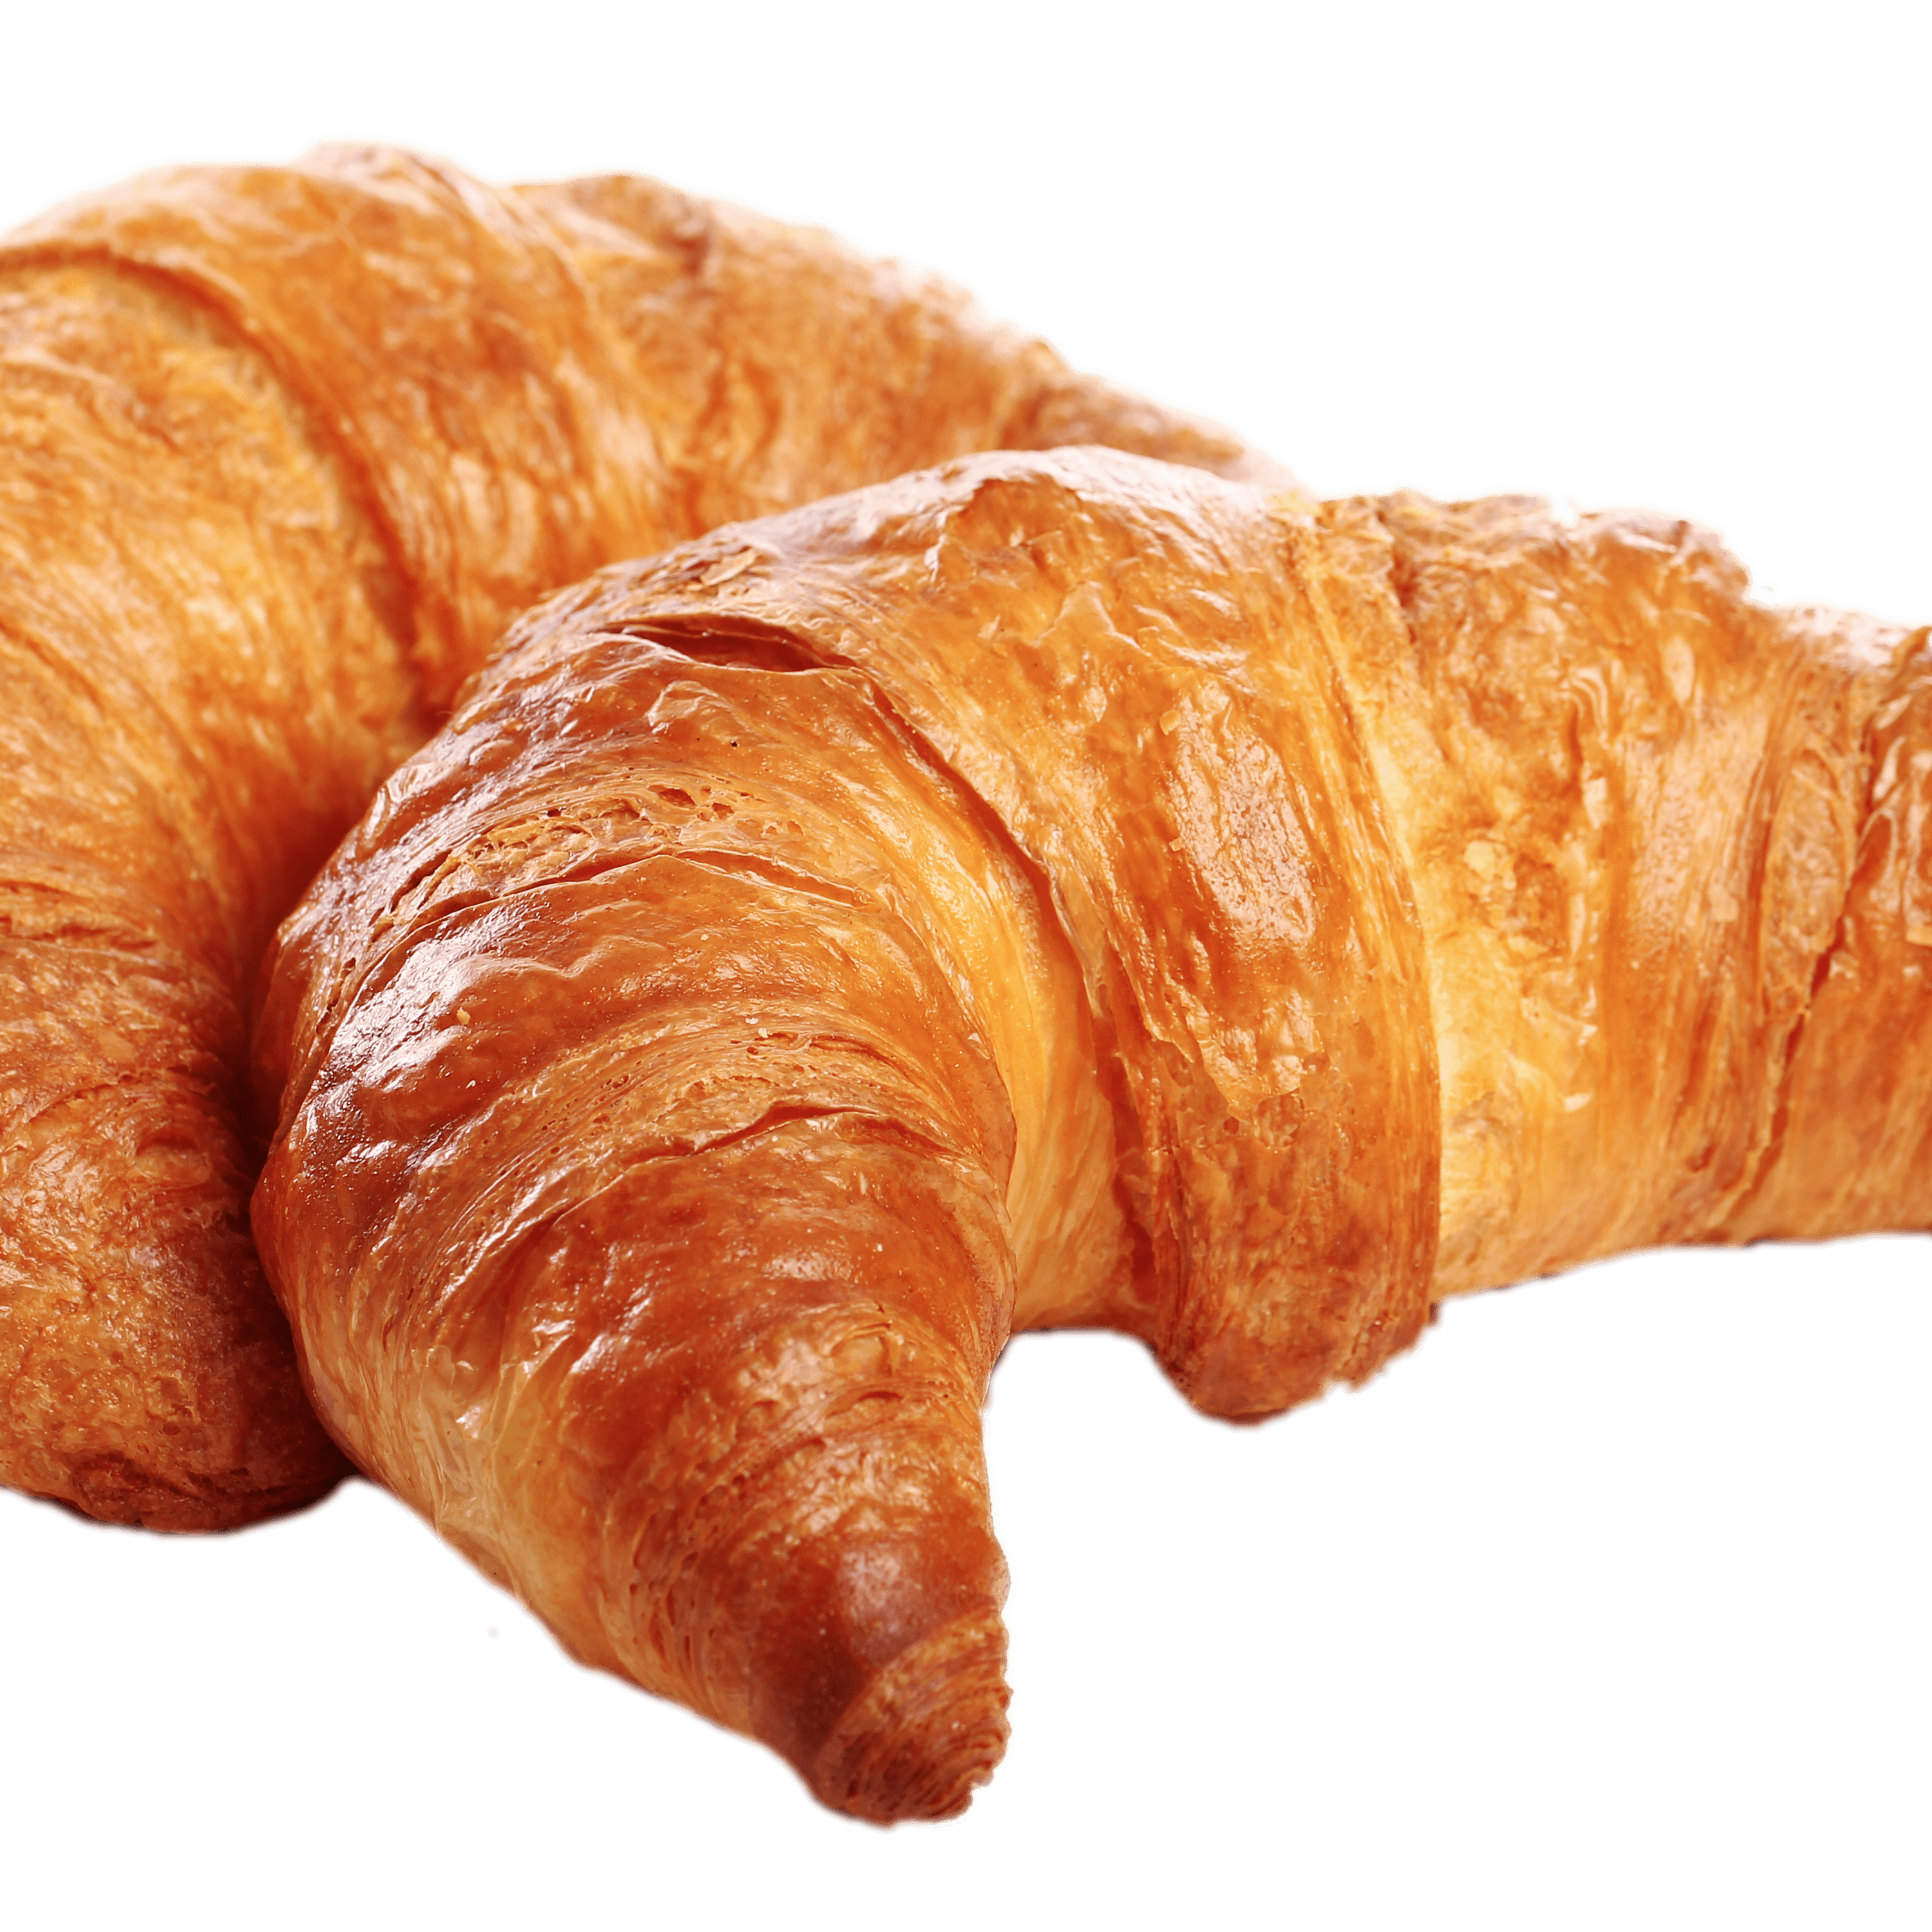 Imagen Transparente de pan de croissant